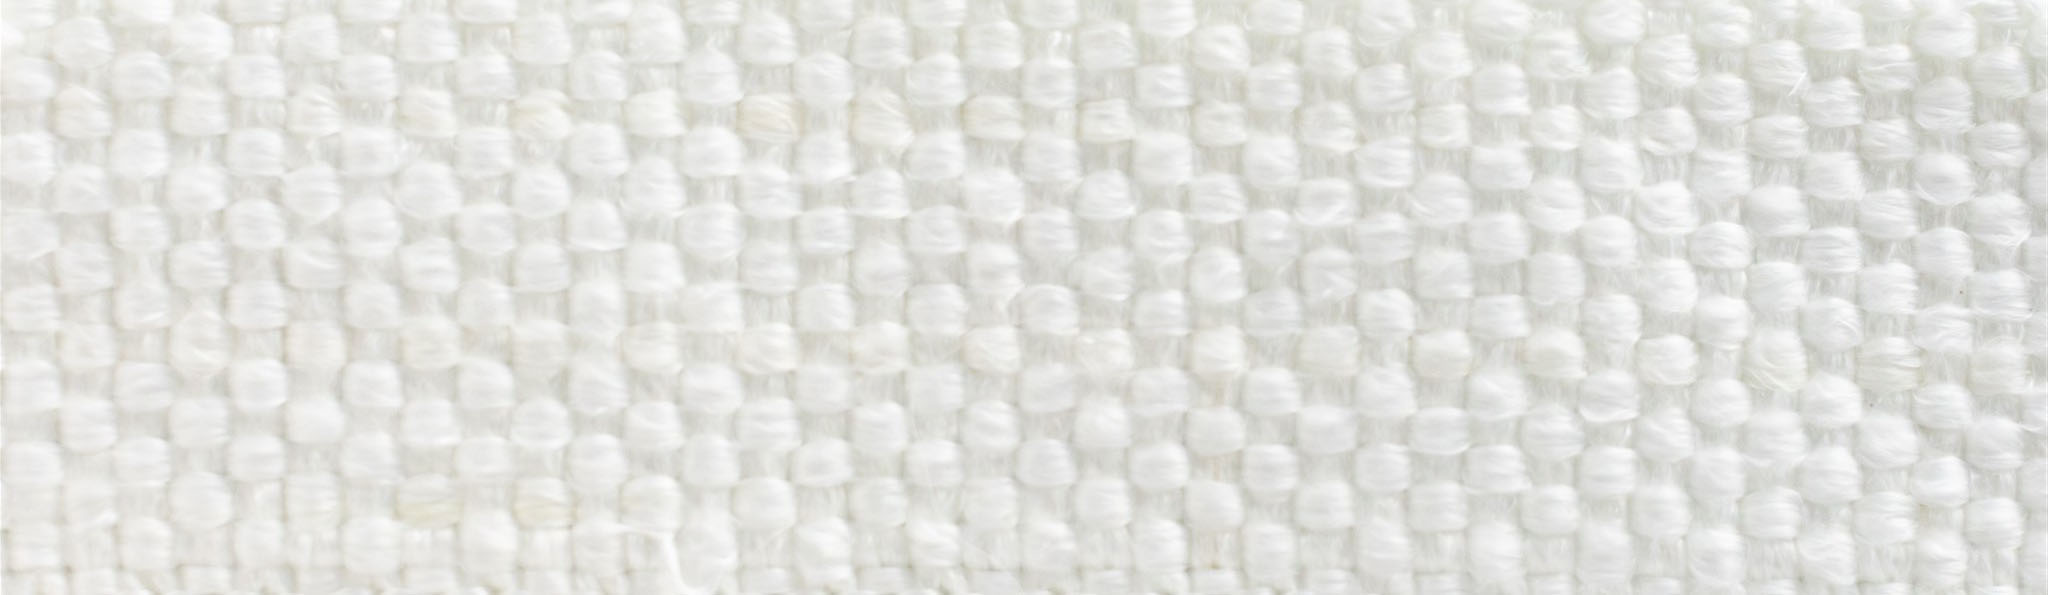 close up of premium-grade fiberglass tape texture